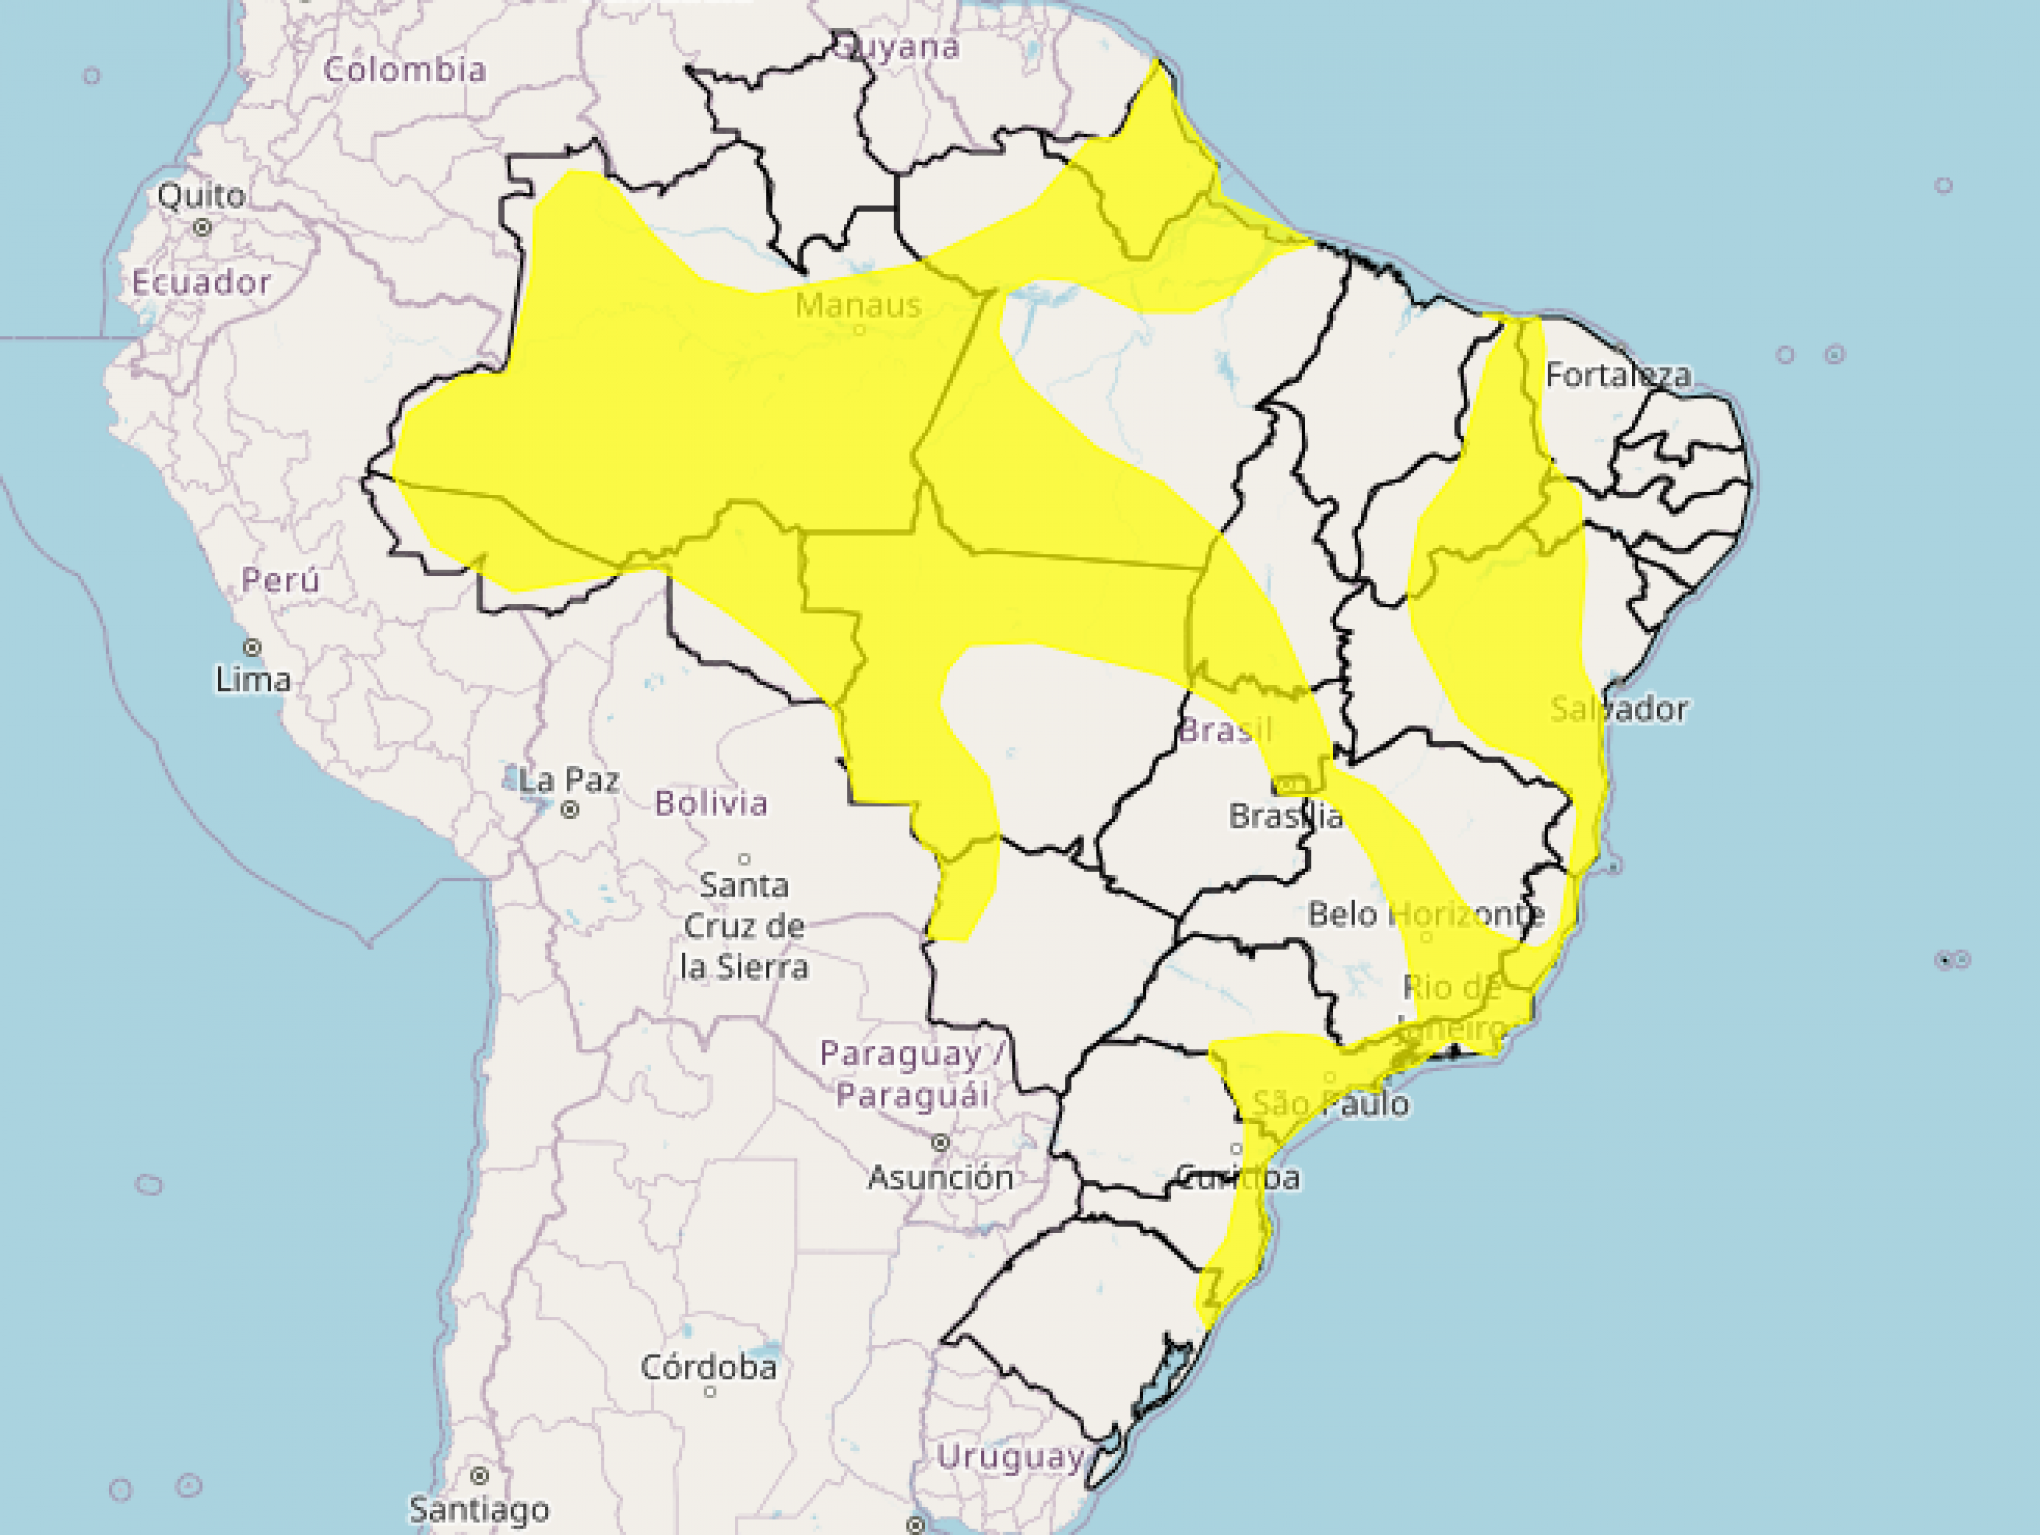 PREVISÃO DO TEMPO: Inmet emite alerta de chuvas intensas para mais de 20 estados brasileiros; RS recebe dois avisos